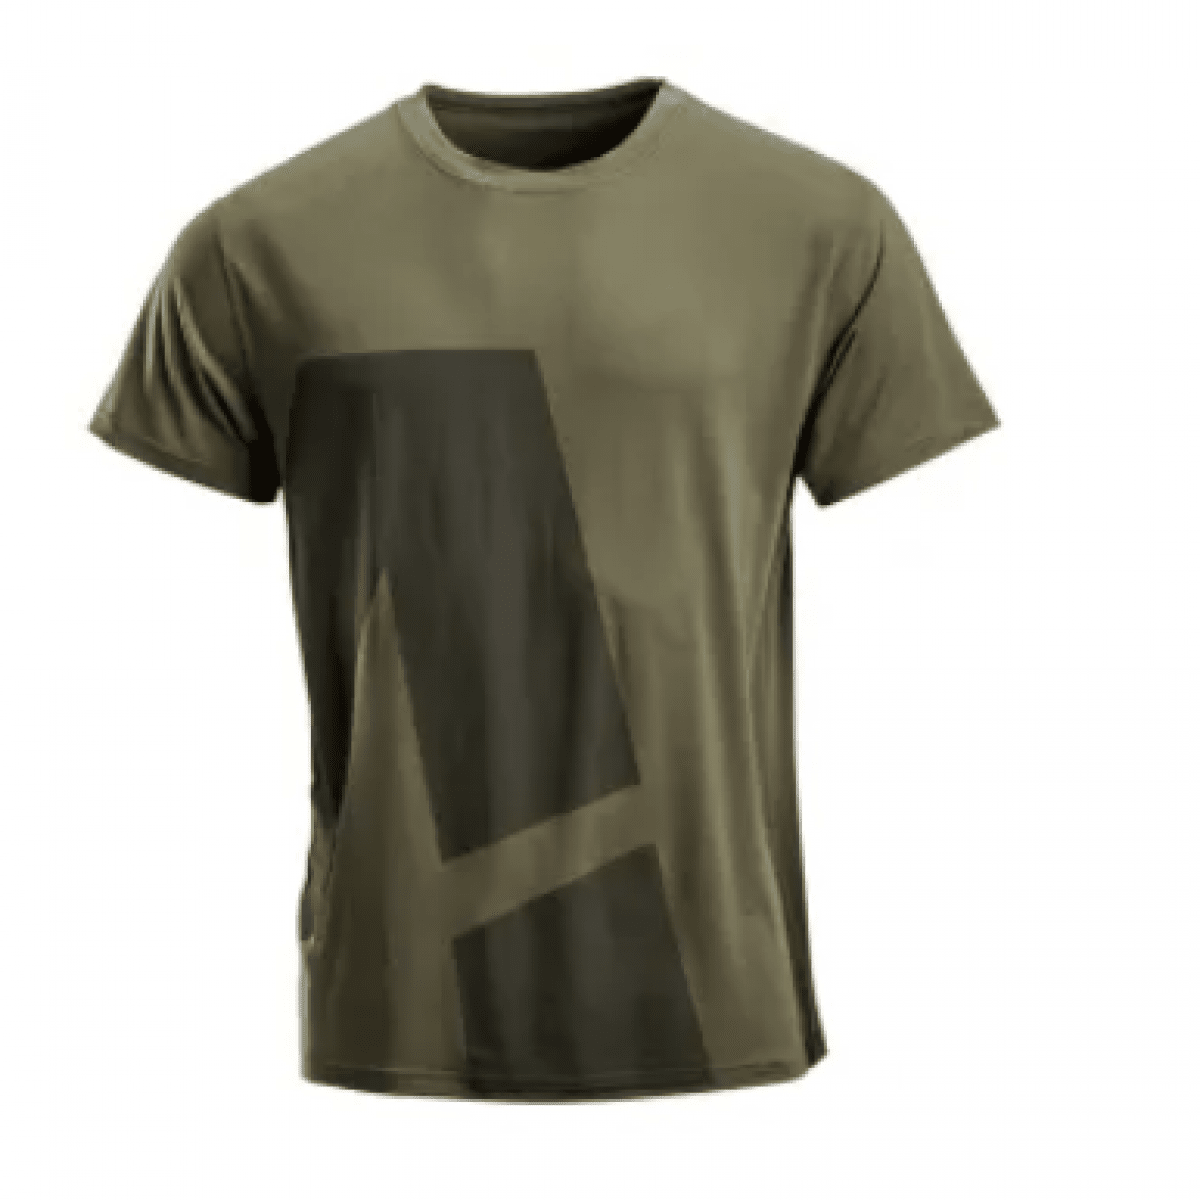 GK/KW506802202046 Pánske tričko s krátkym rukávom, zelené,veľ.XS